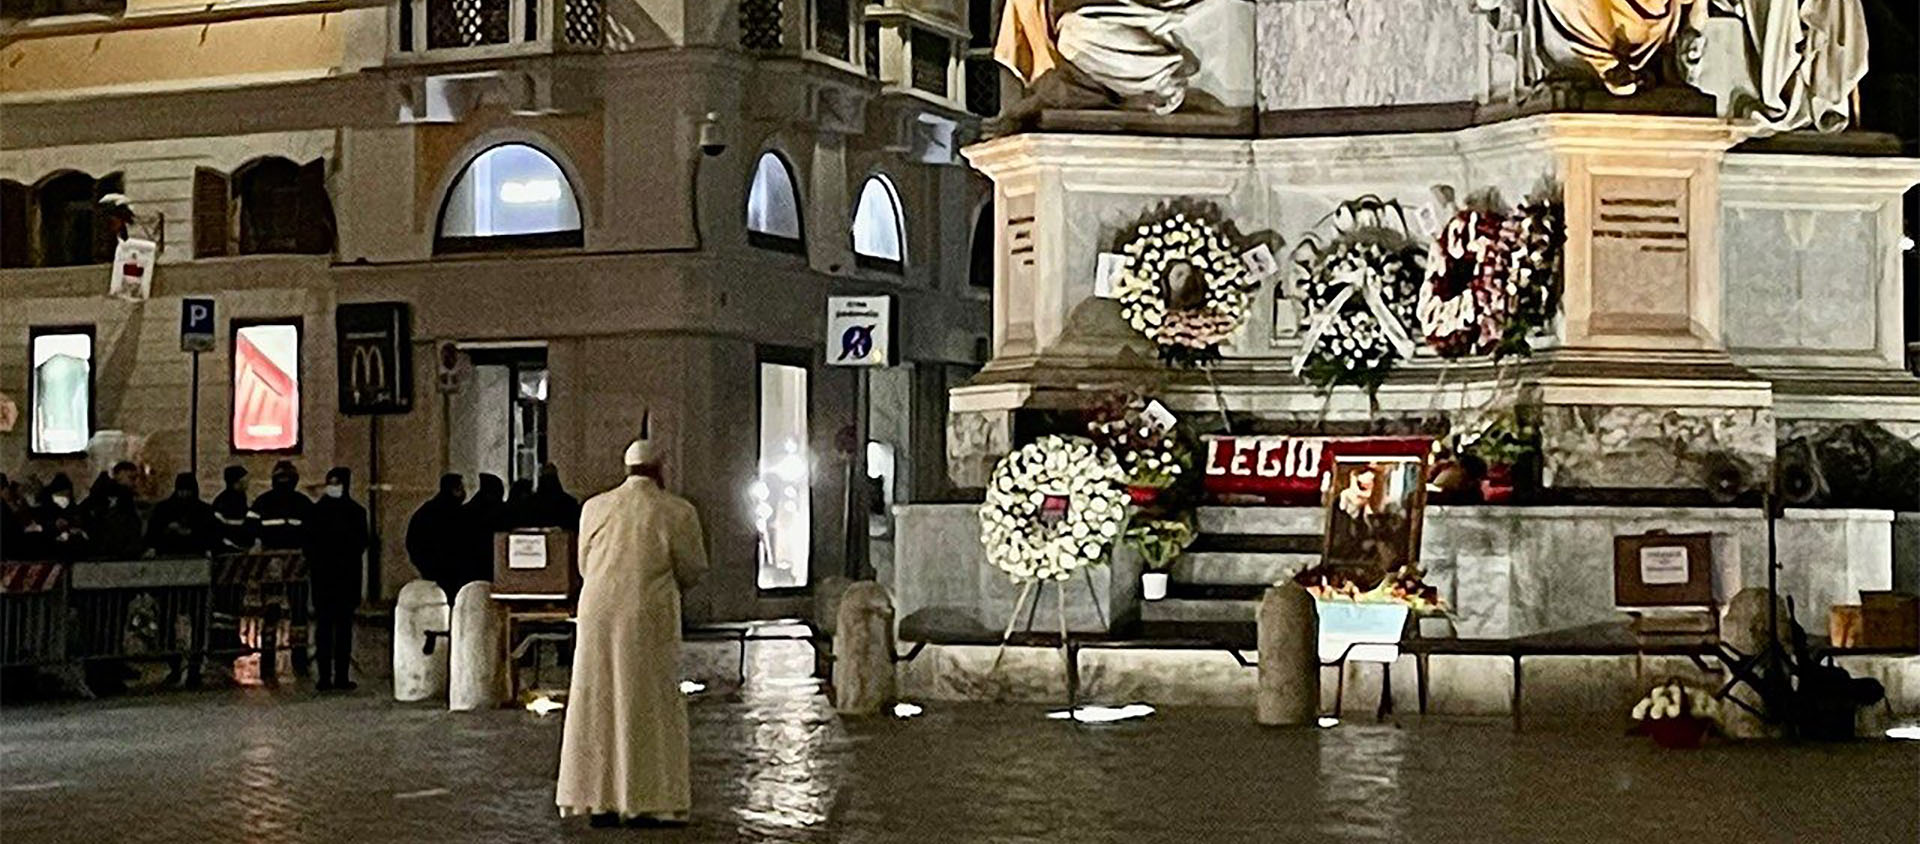 Le pape est venu, à l'aube, se recueillir devant la statue de la Vierge immaculée, place d'Espagne, à Rome | © Vatican News